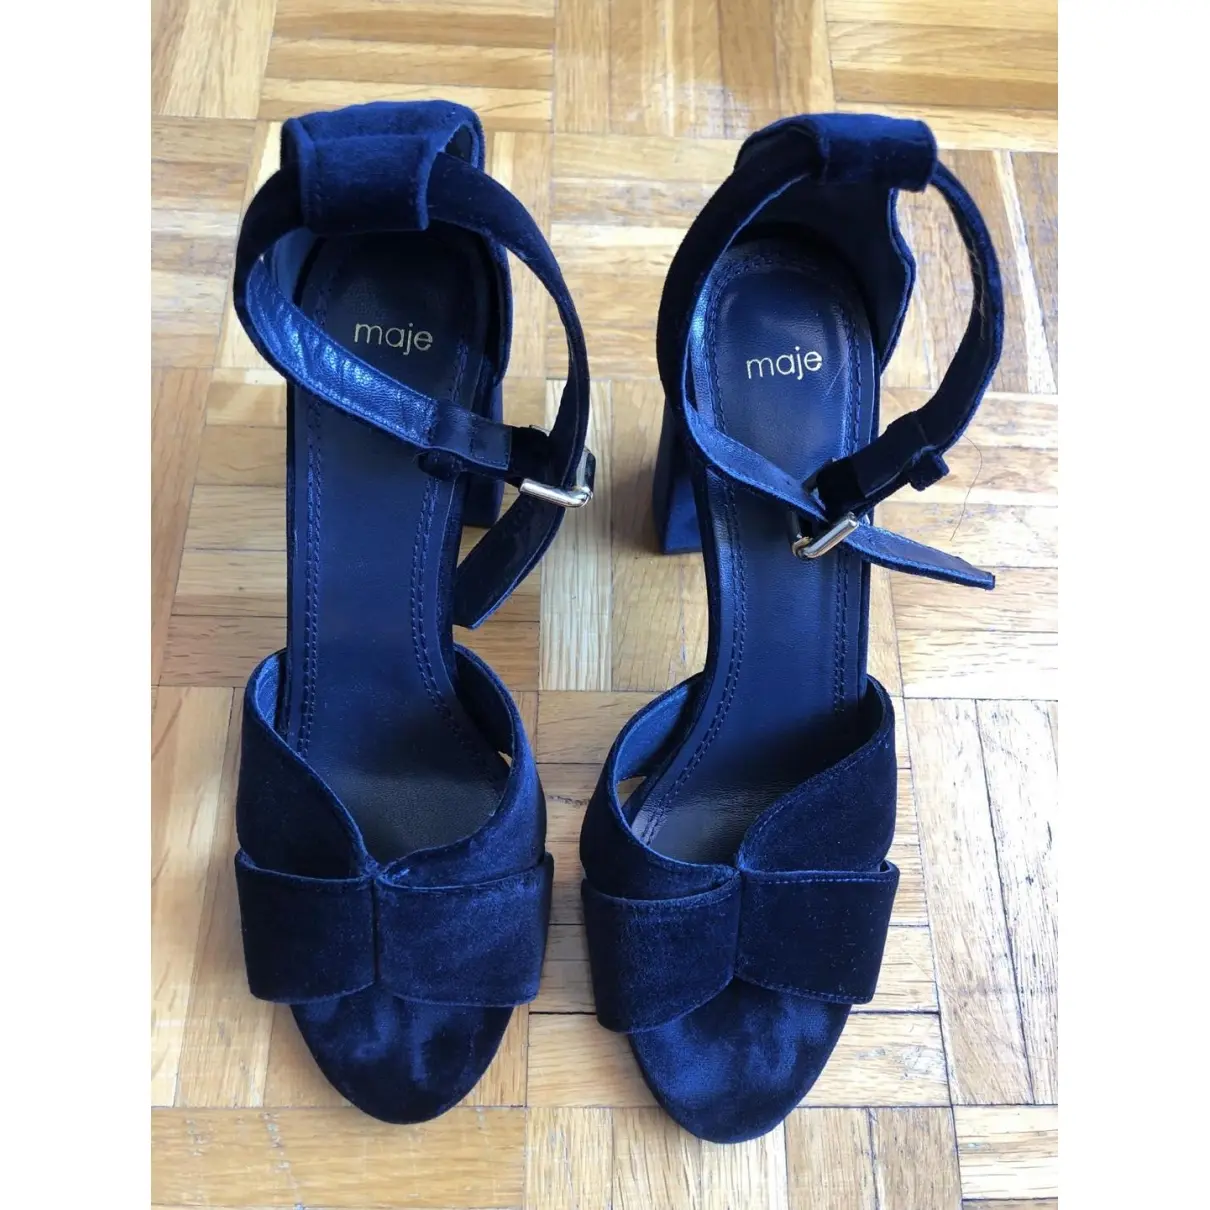 Buy Maje Spring Summer 2019 velvet heels online